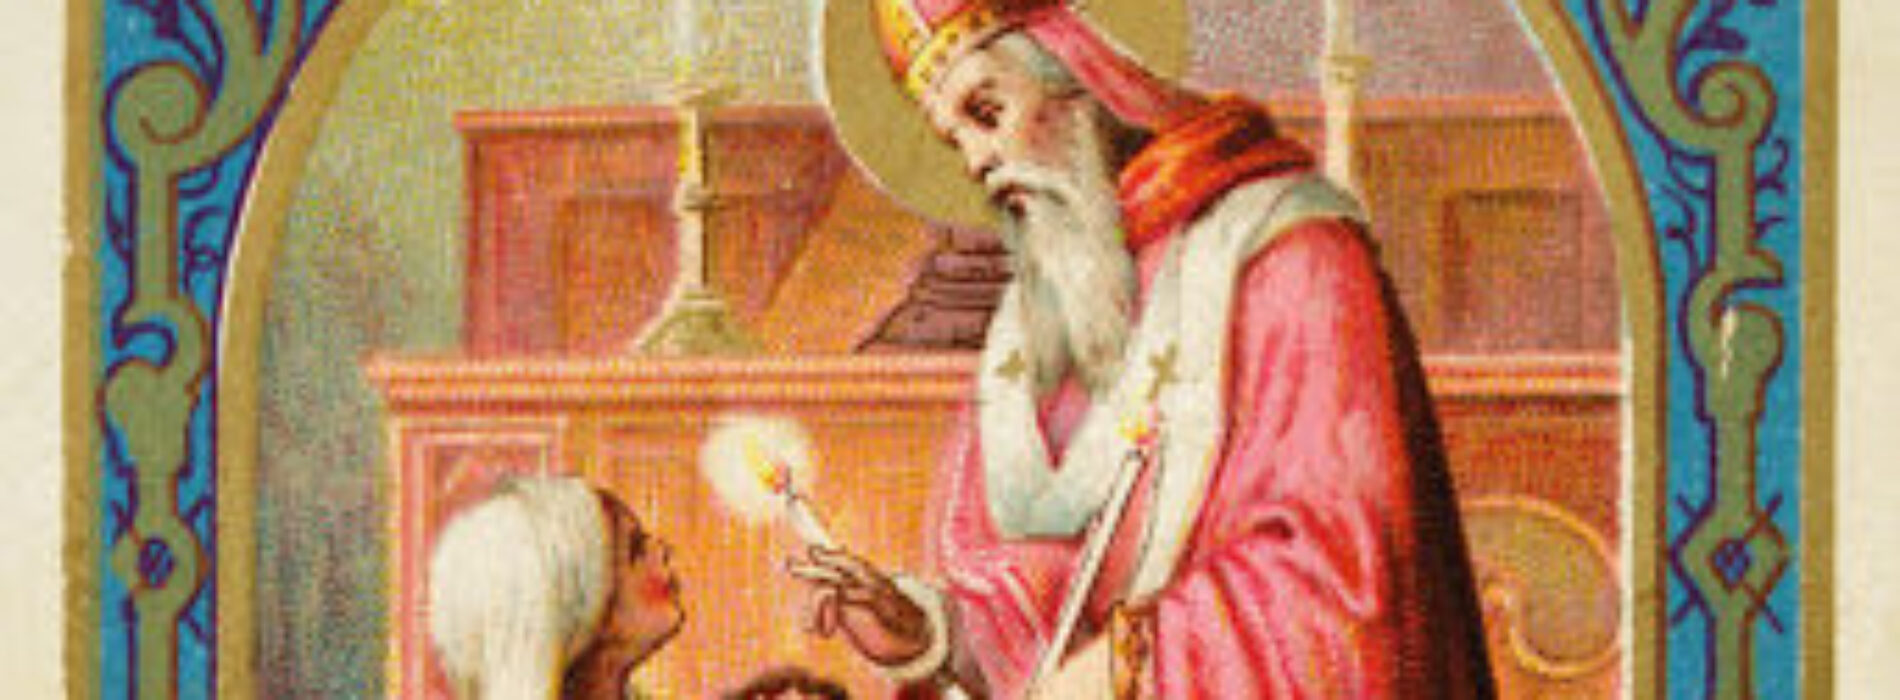 San Biagio, il vescovo martire invocato per proteggere la gola